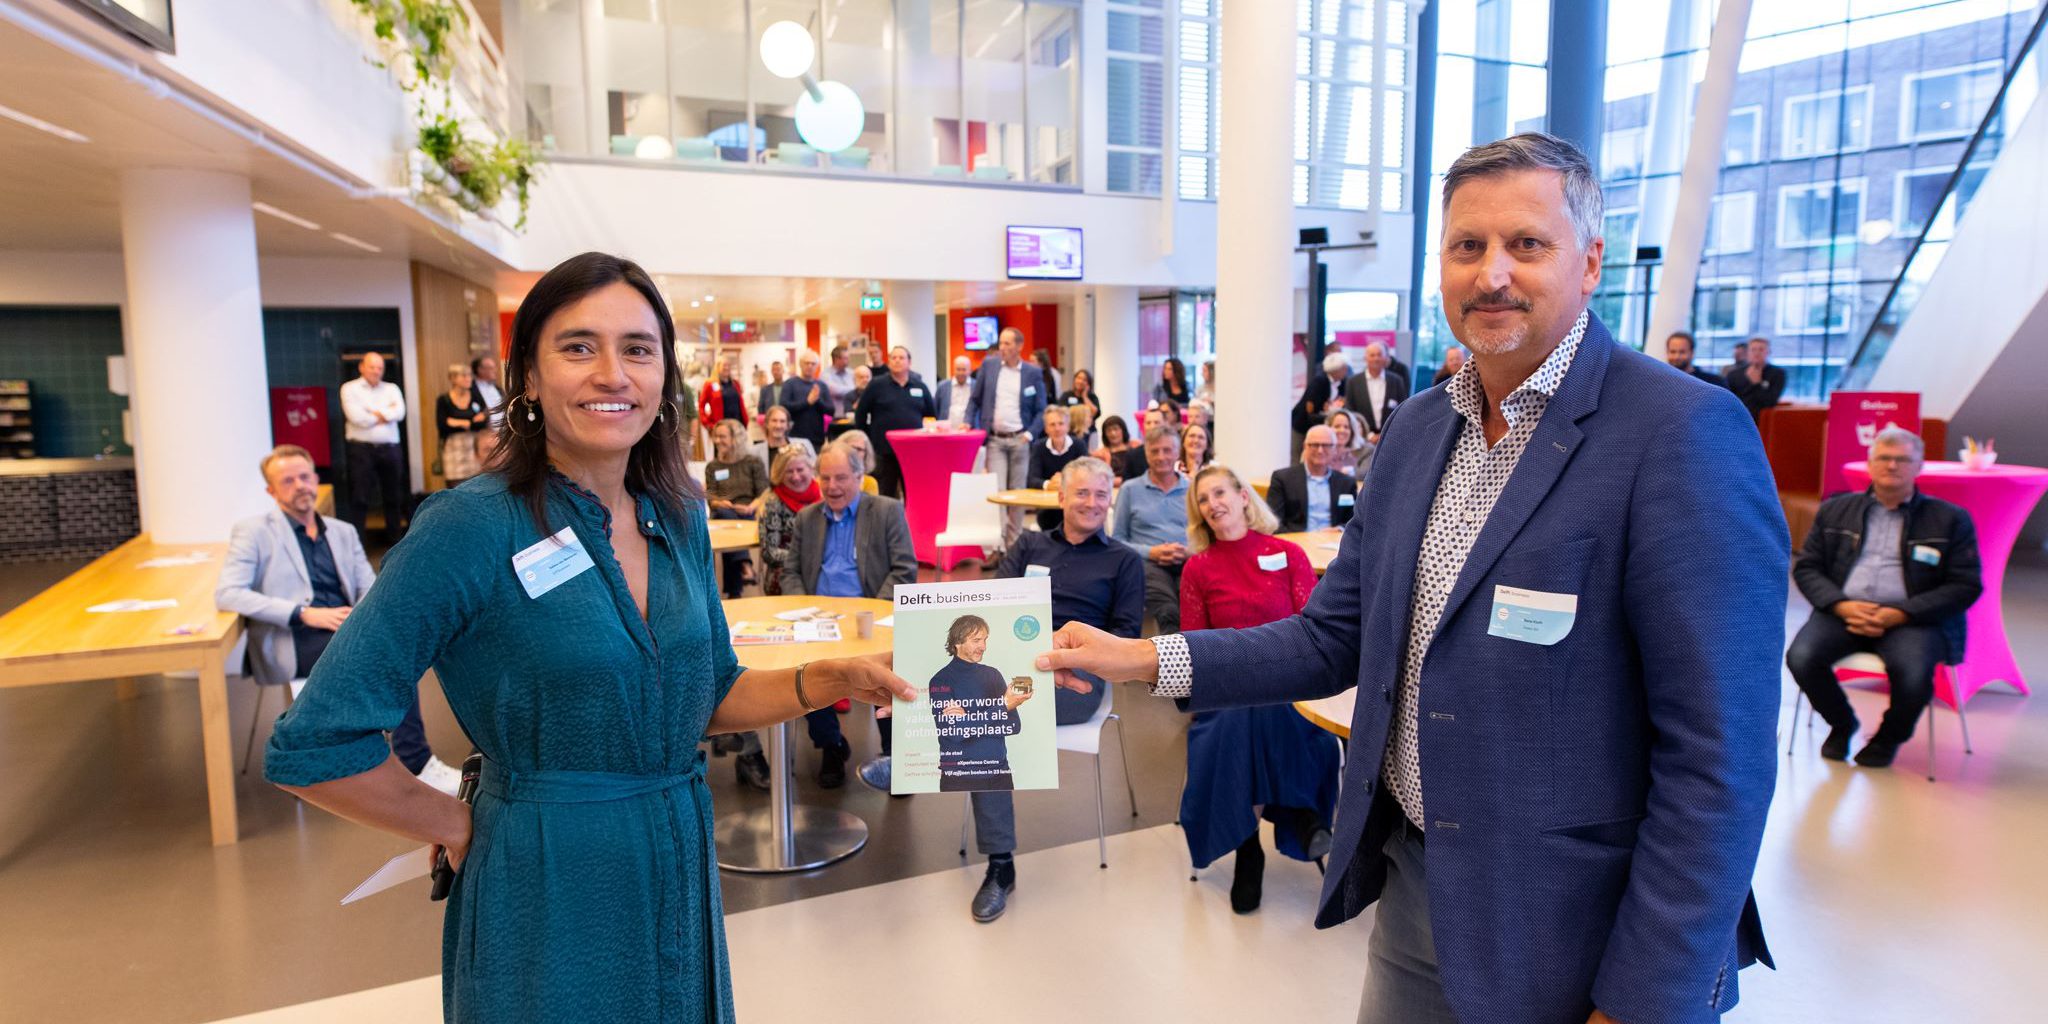 Sabine van Meeteren en Rene van der Kluft tijdens de Delft.business lancering